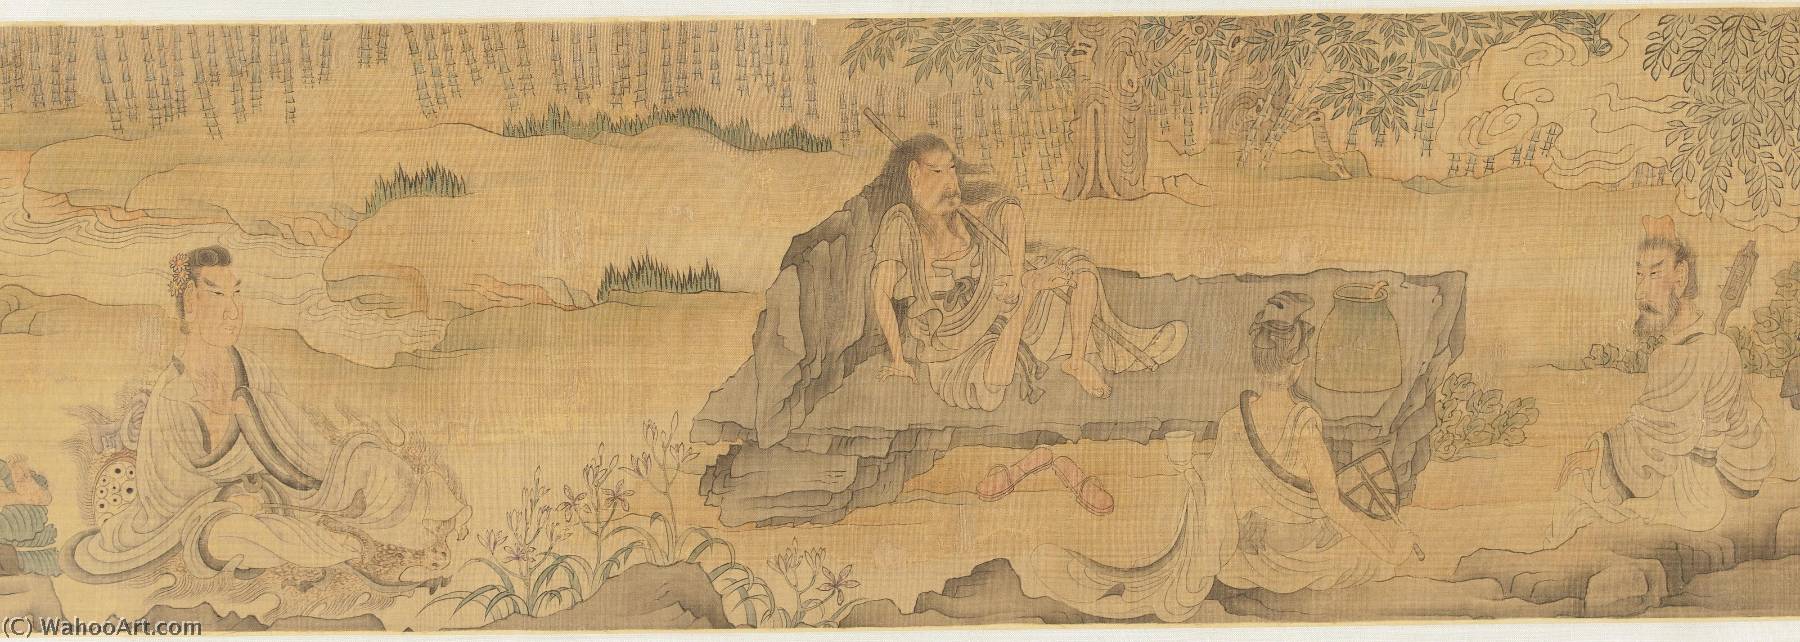 WikiOO.org - אנציקלופדיה לאמנויות יפות - ציור, יצירות אמנות Chen Hongshou - SEVEN SAGES OF THE BAMBOO GROVE